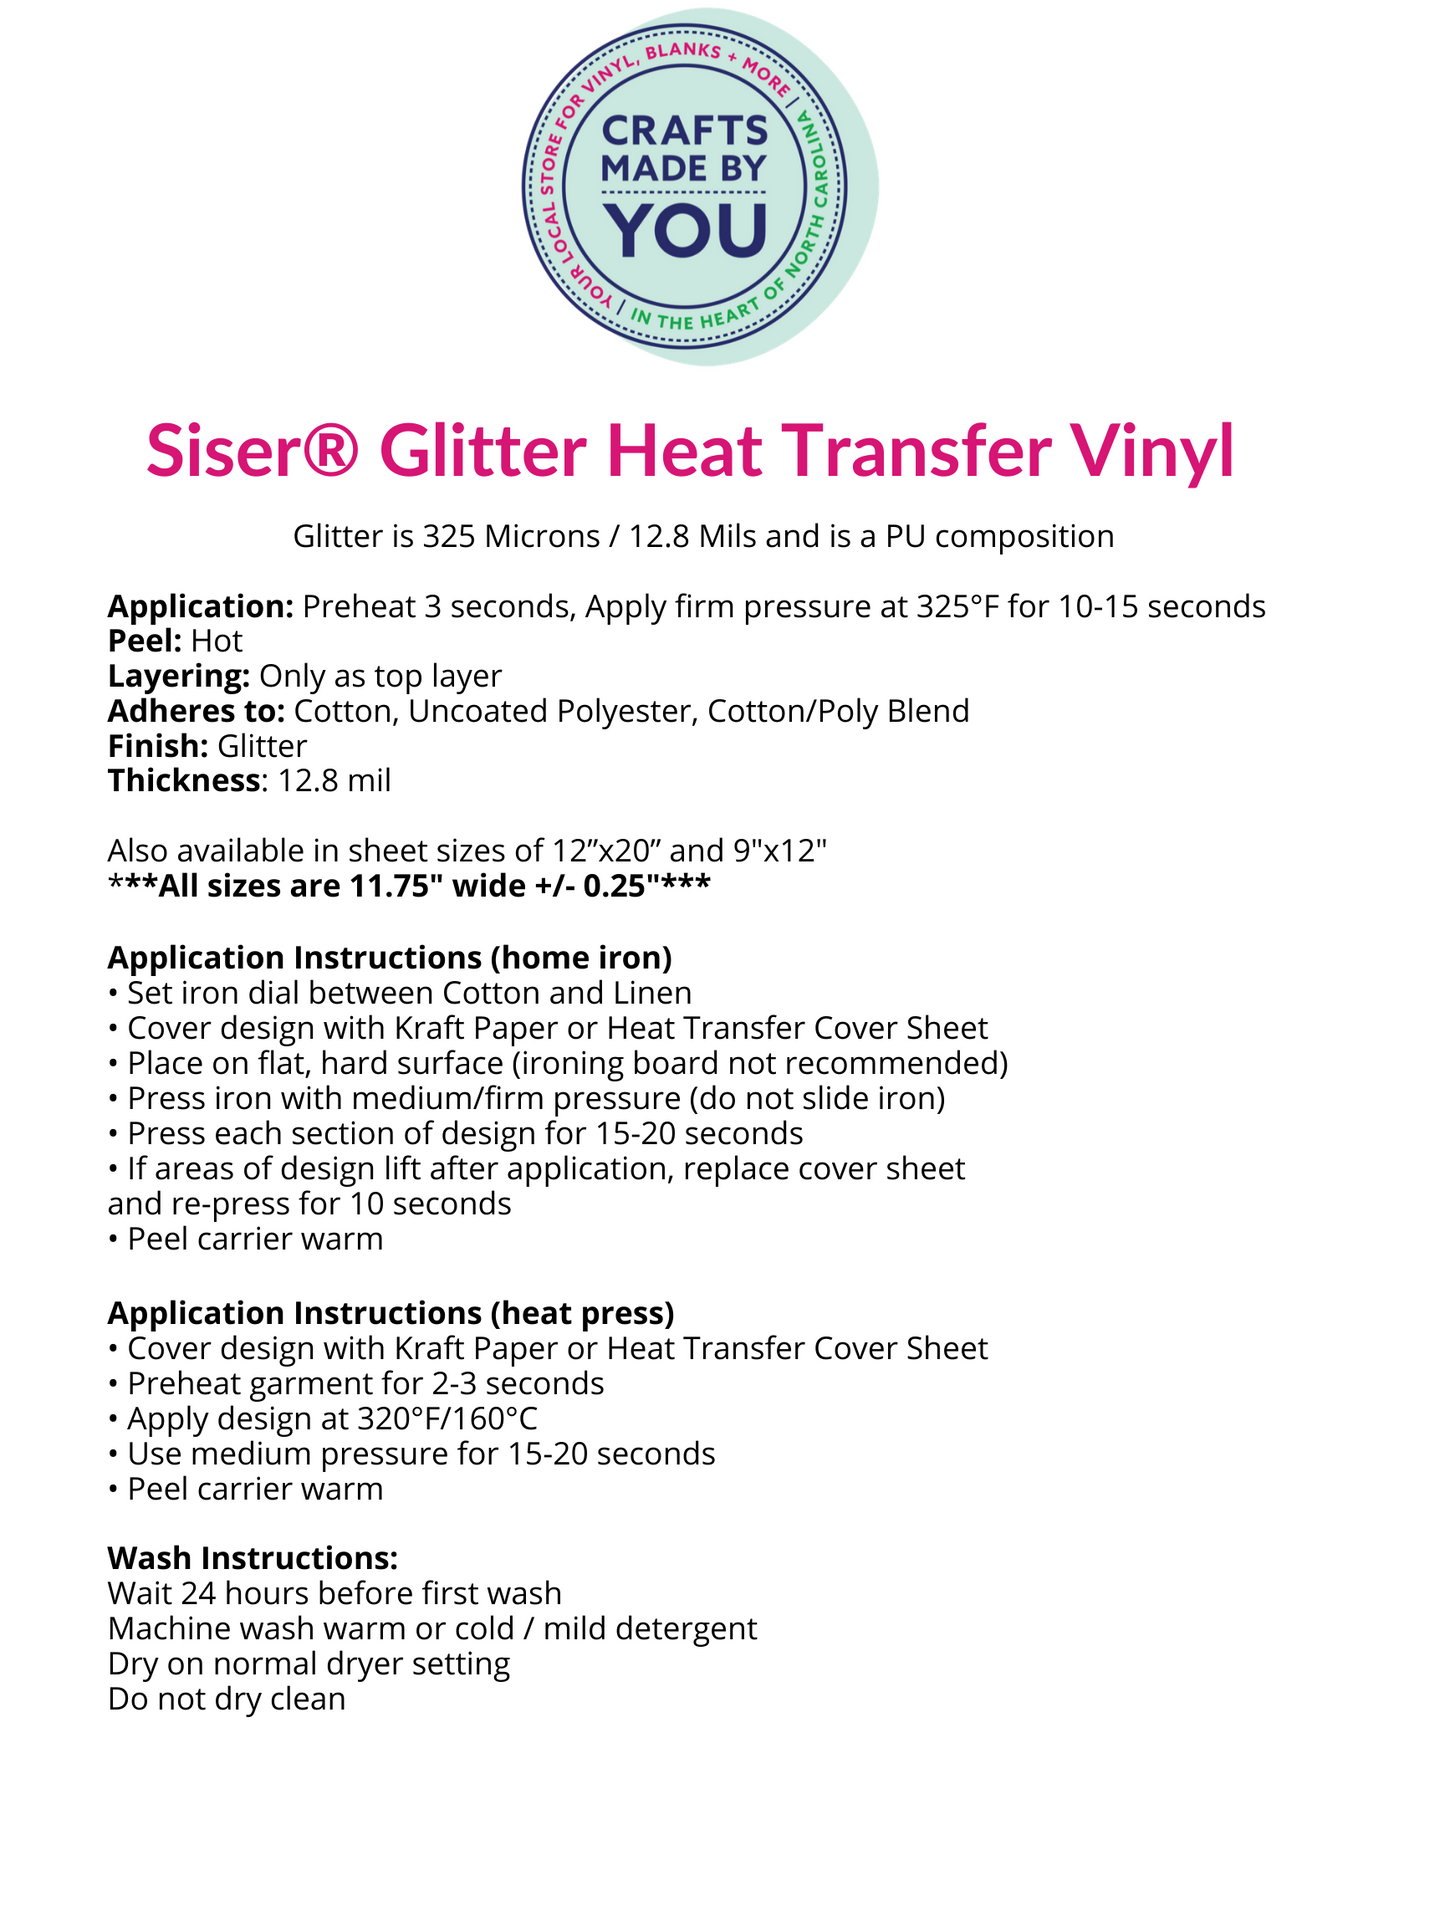 Siser Glitter HTV Sheet - Gold